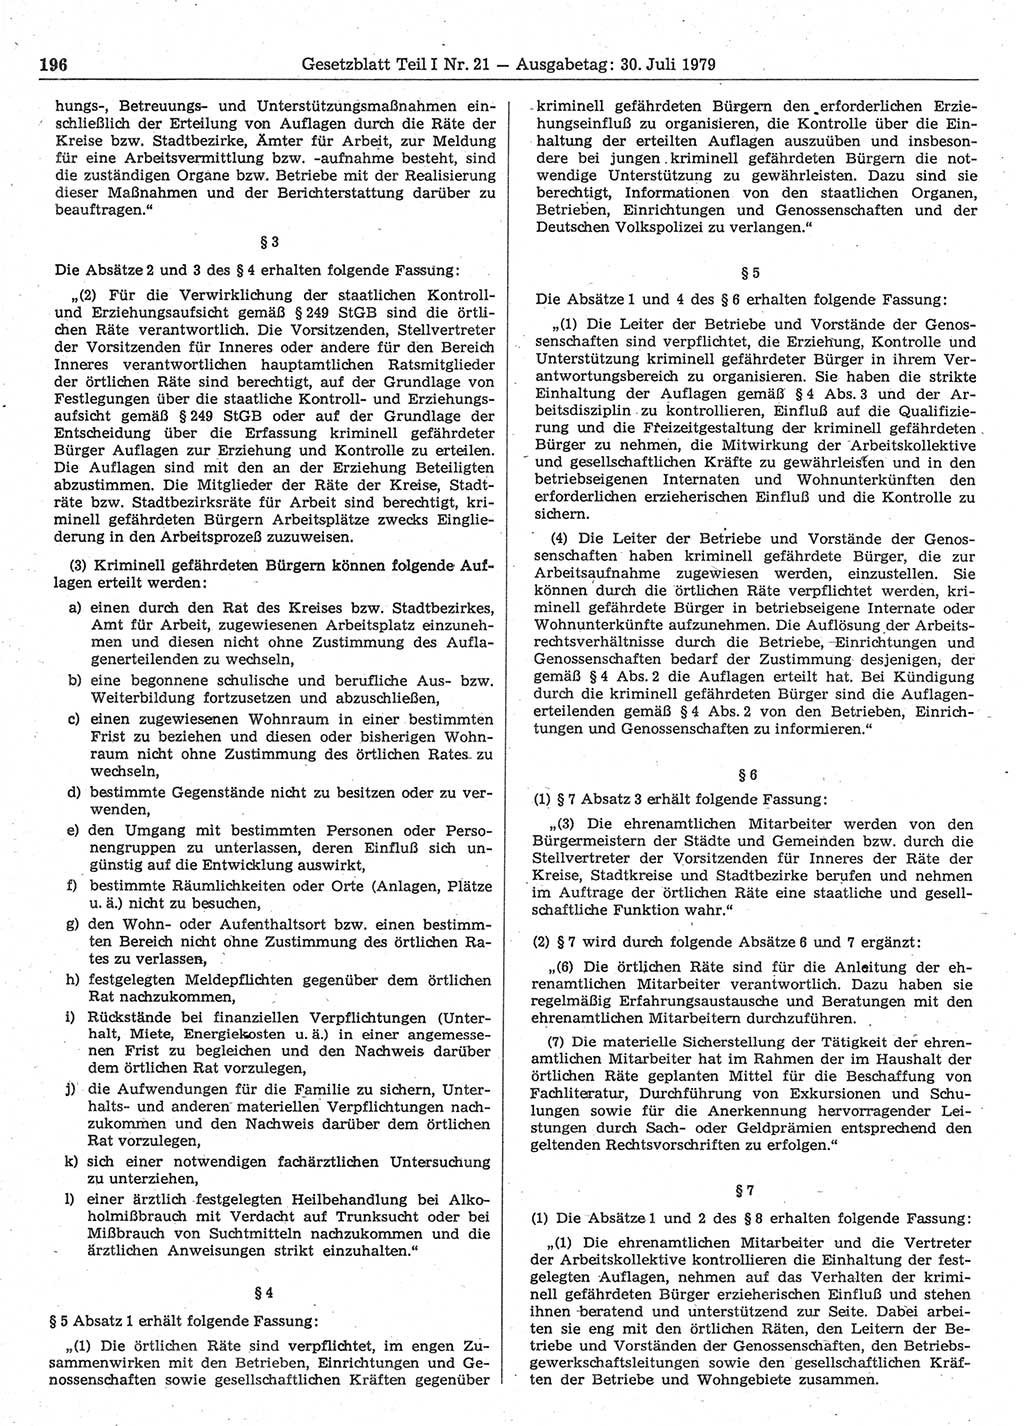 Gesetzblatt (GBl.) der Deutschen Demokratischen Republik (DDR) Teil Ⅰ 1979, Seite 196 (GBl. DDR Ⅰ 1979, S. 196)